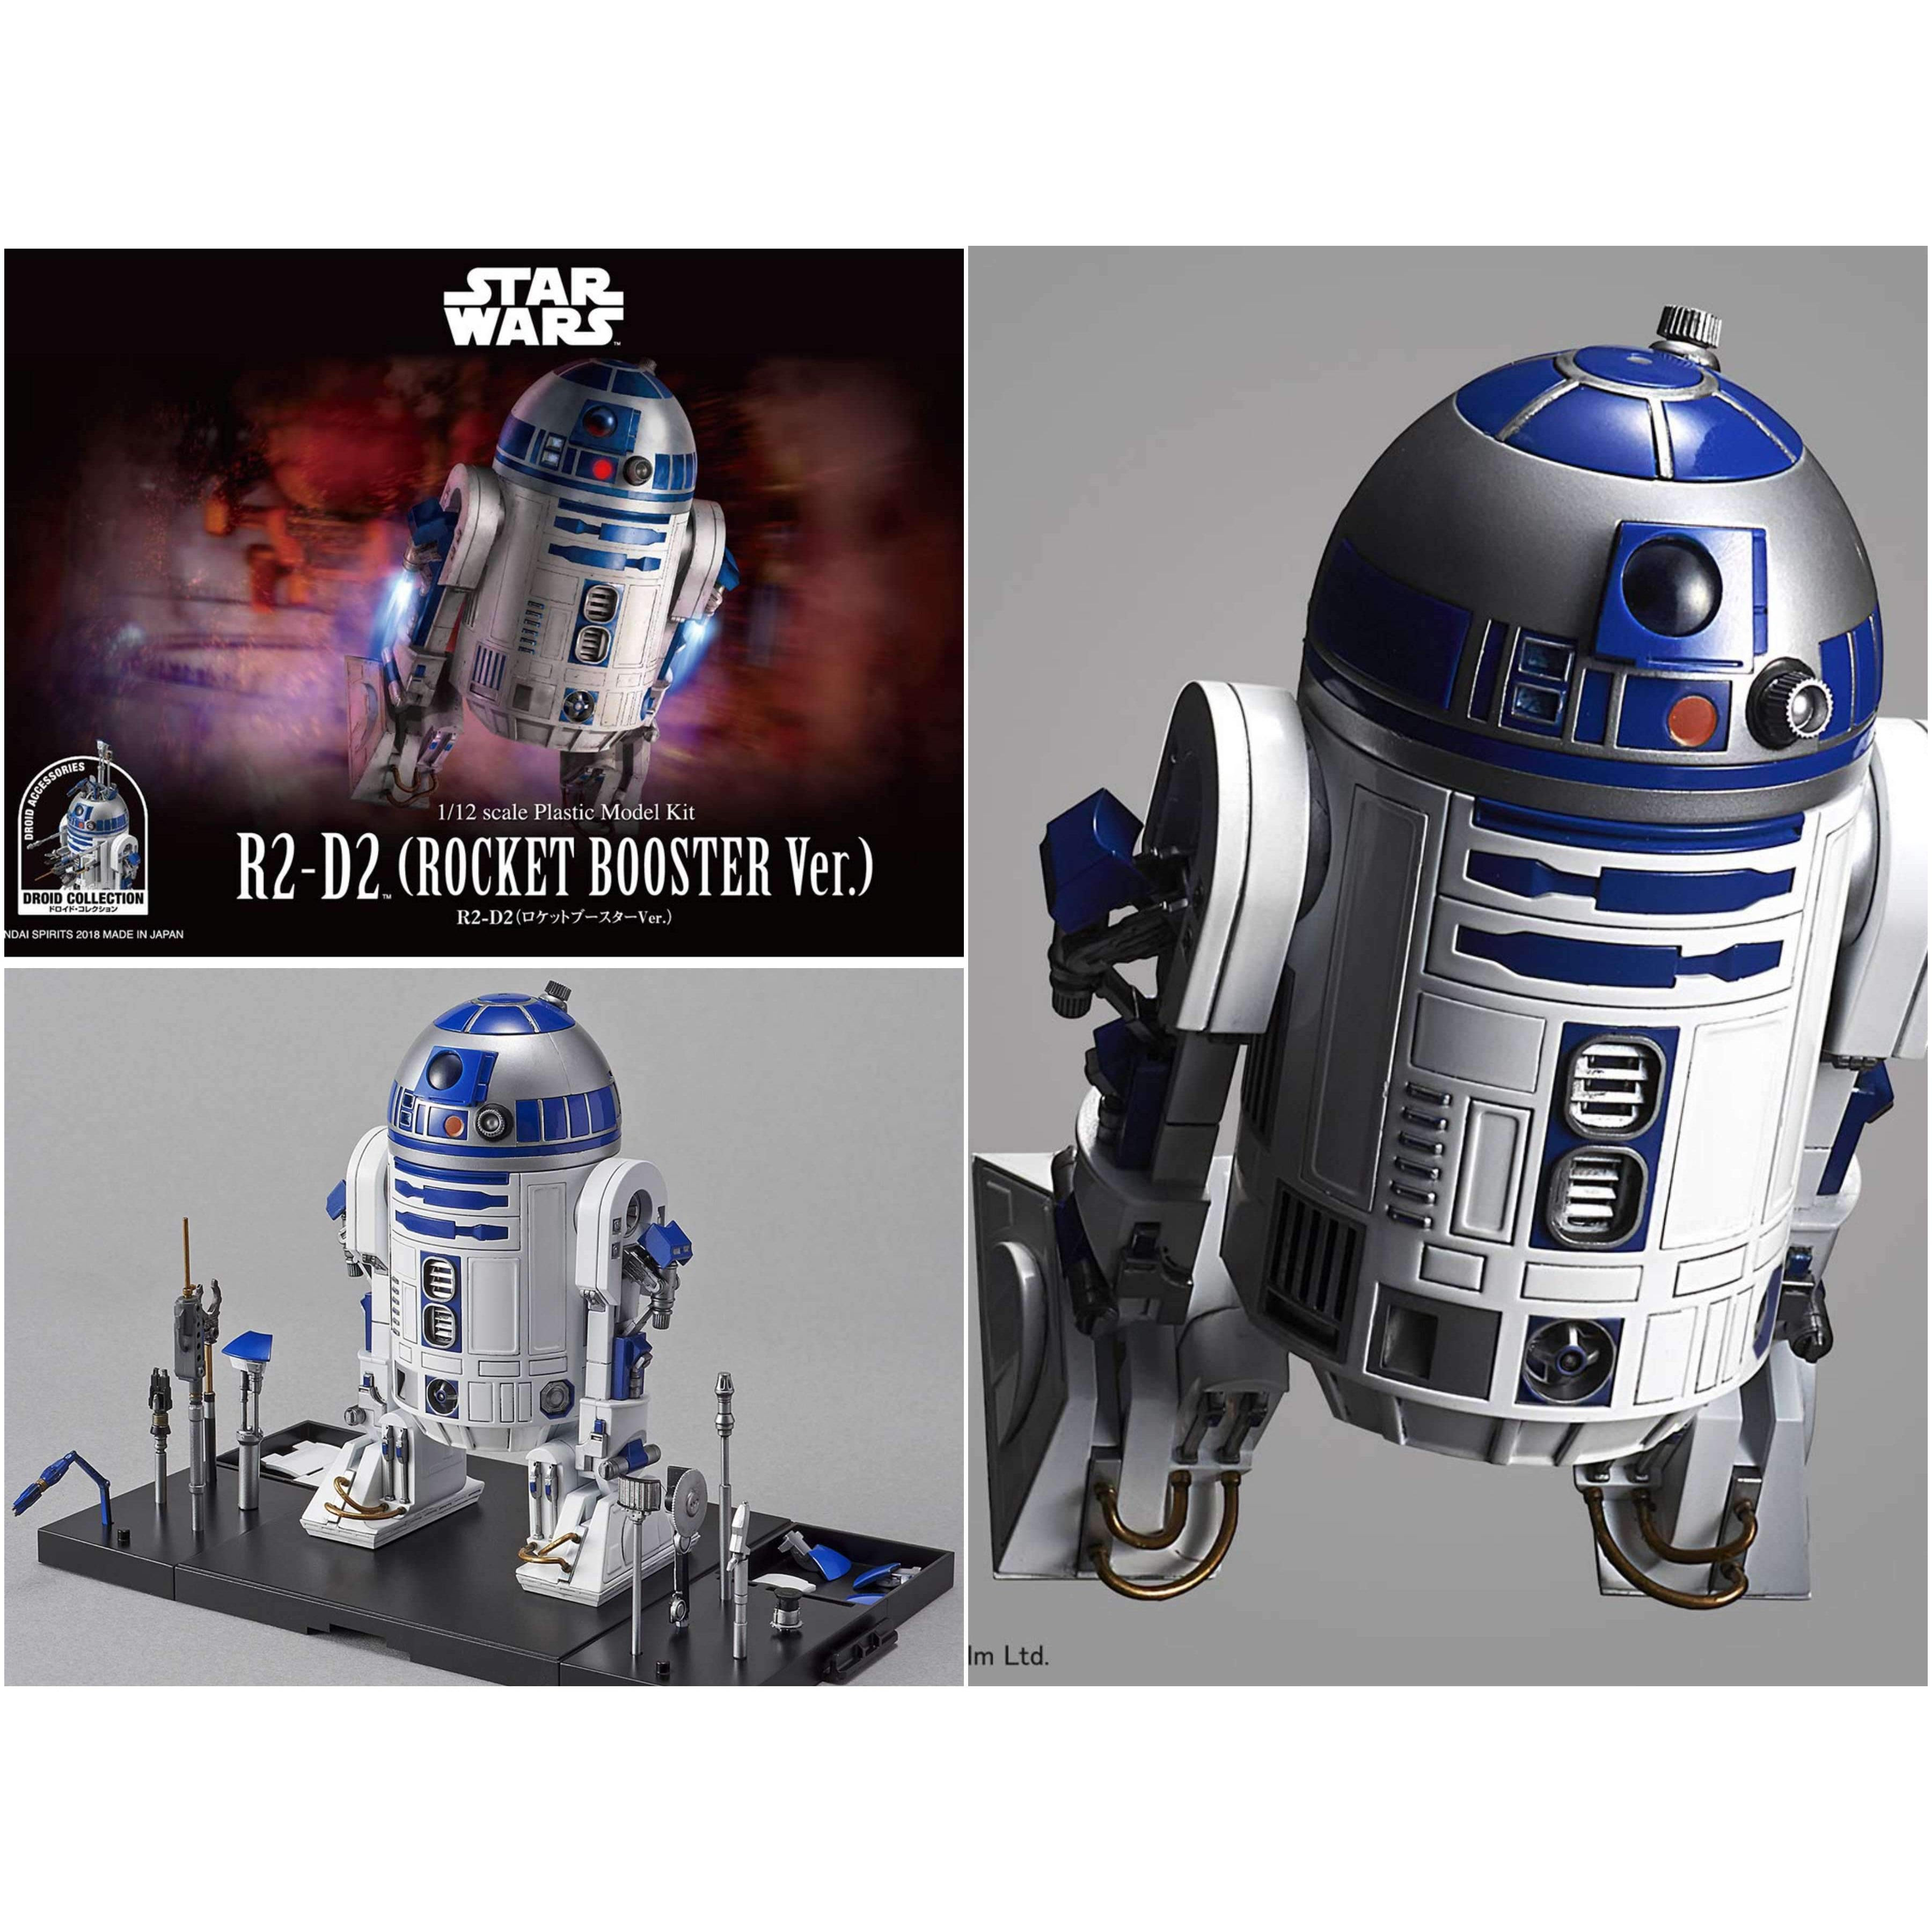 Image of Star Wars R2-D2 (Rocket Booster Ver.) 1/12 Scale Model Kit